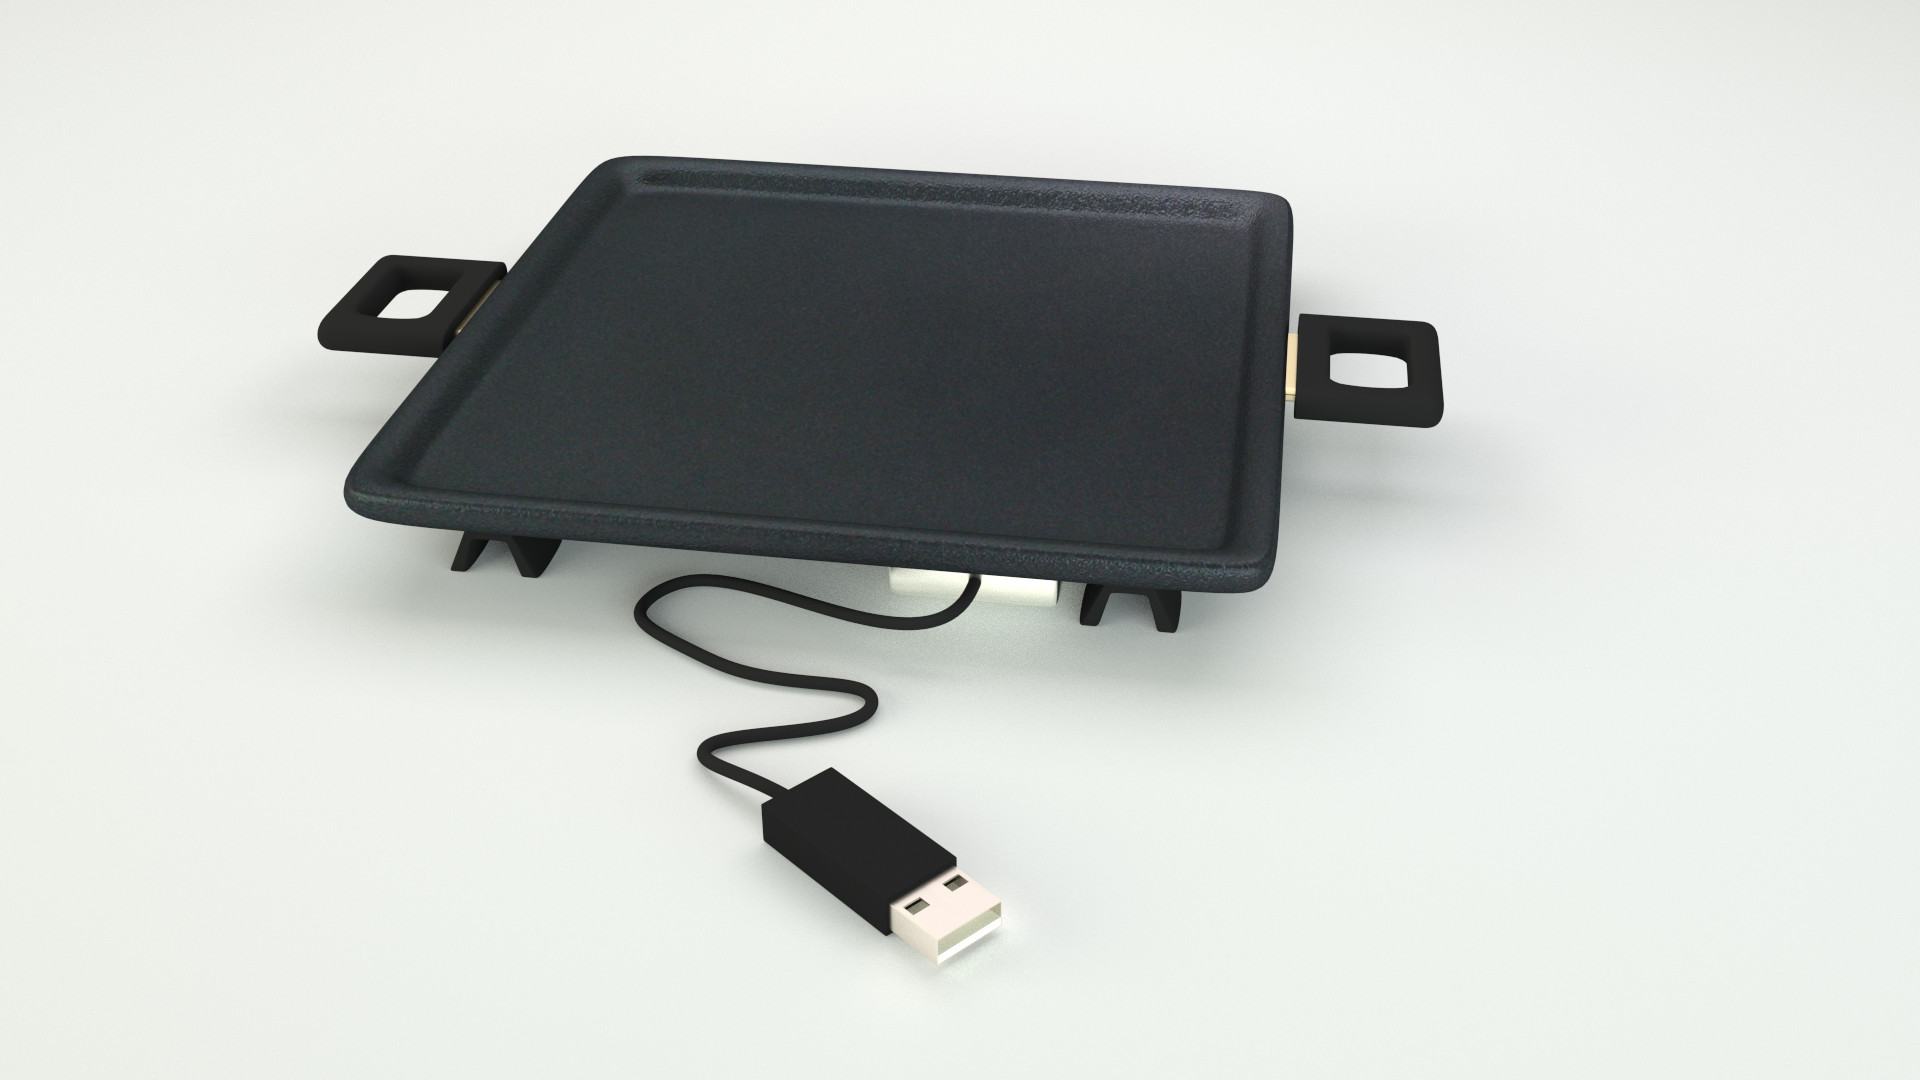 Obrázek USB frying pan